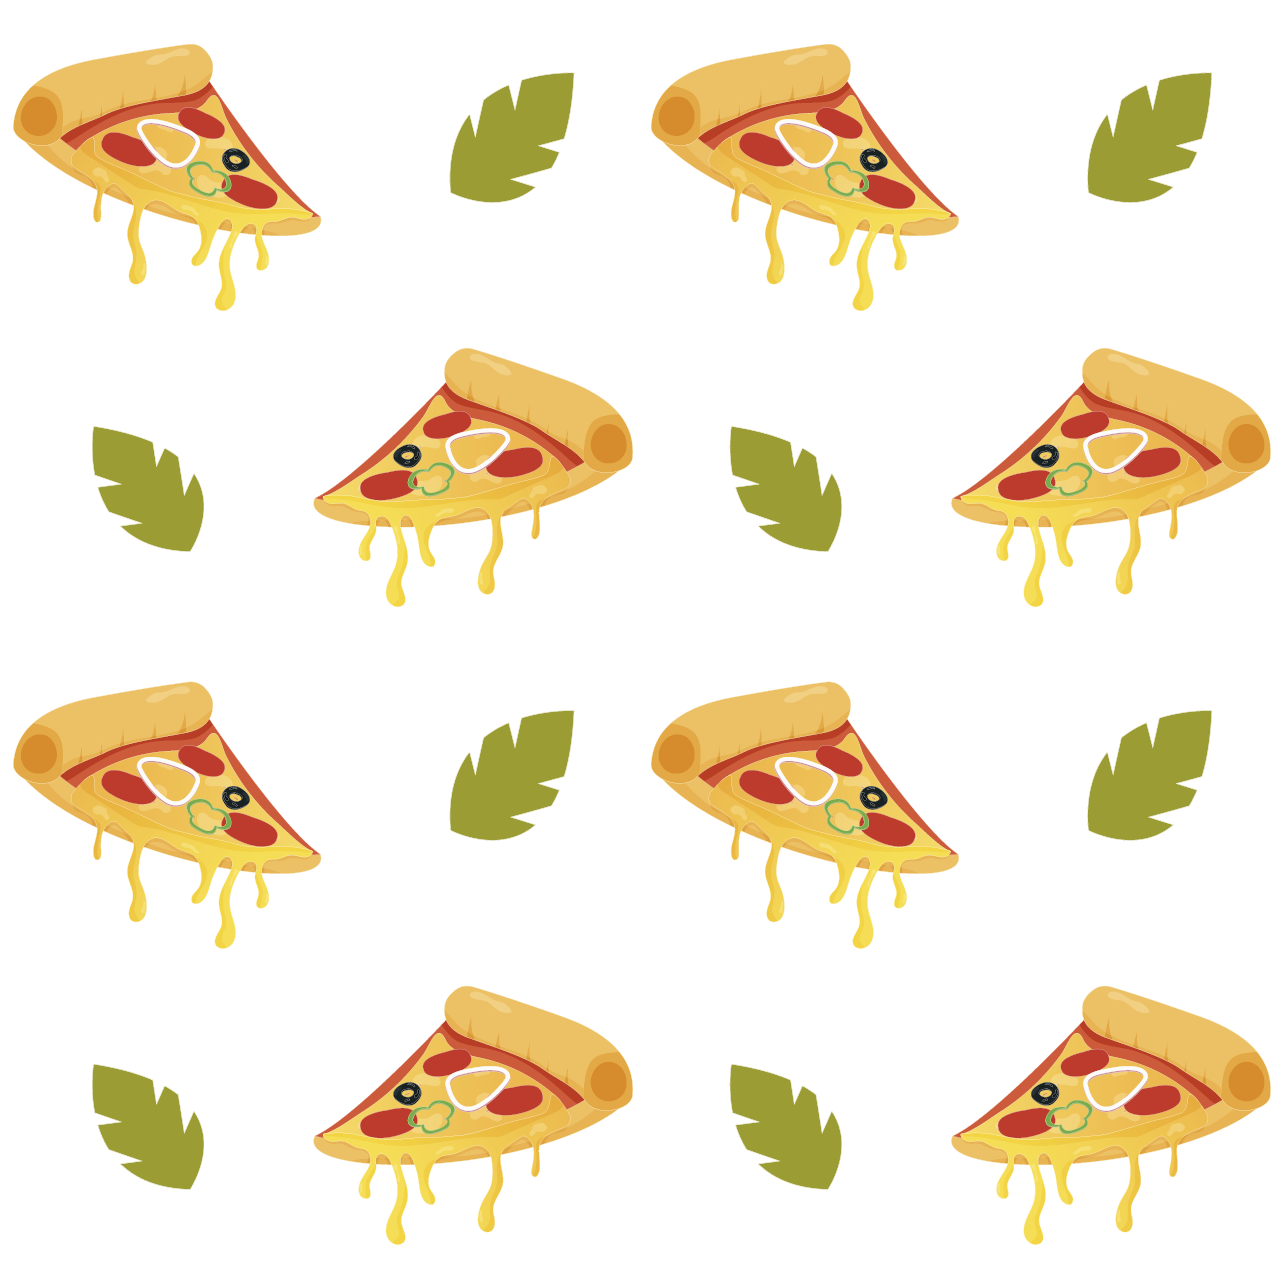 pizza slice pattern